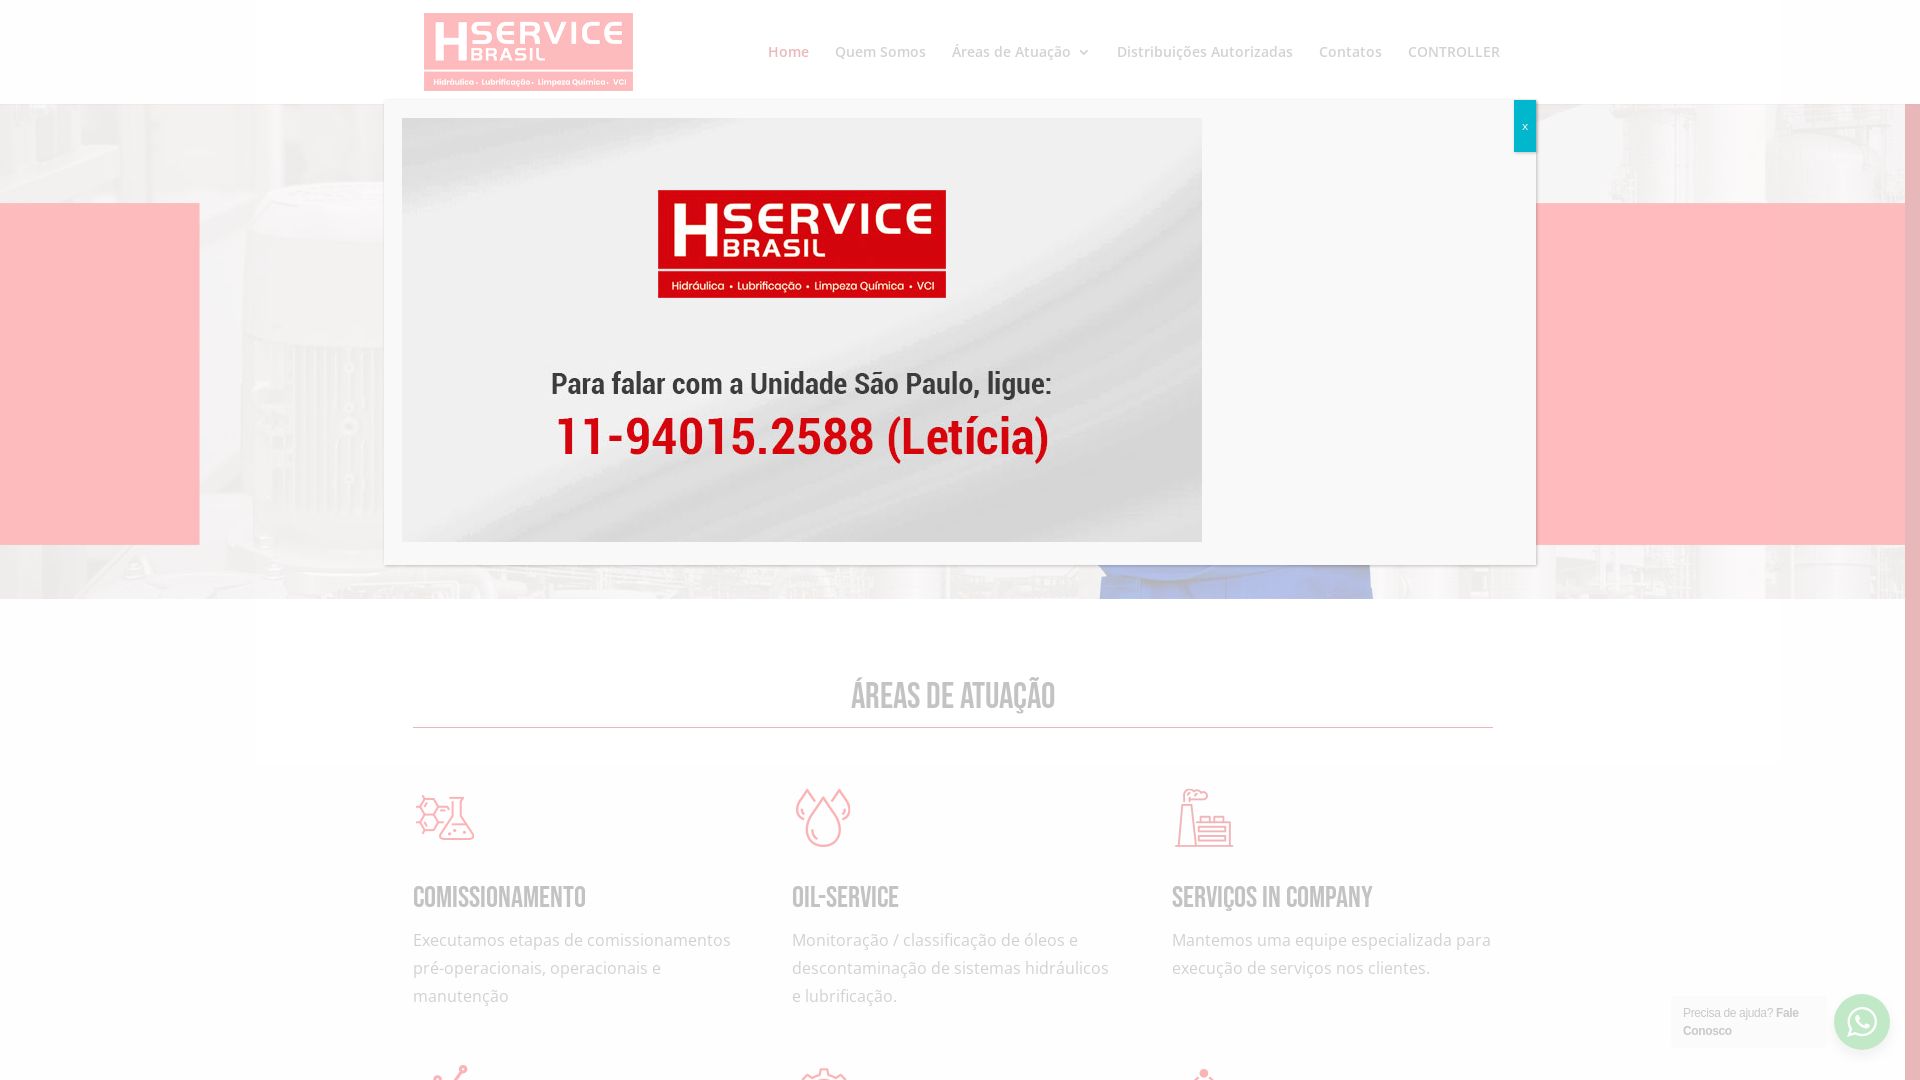 вебсайт hservicebrasil.com.br Є   ONLINE